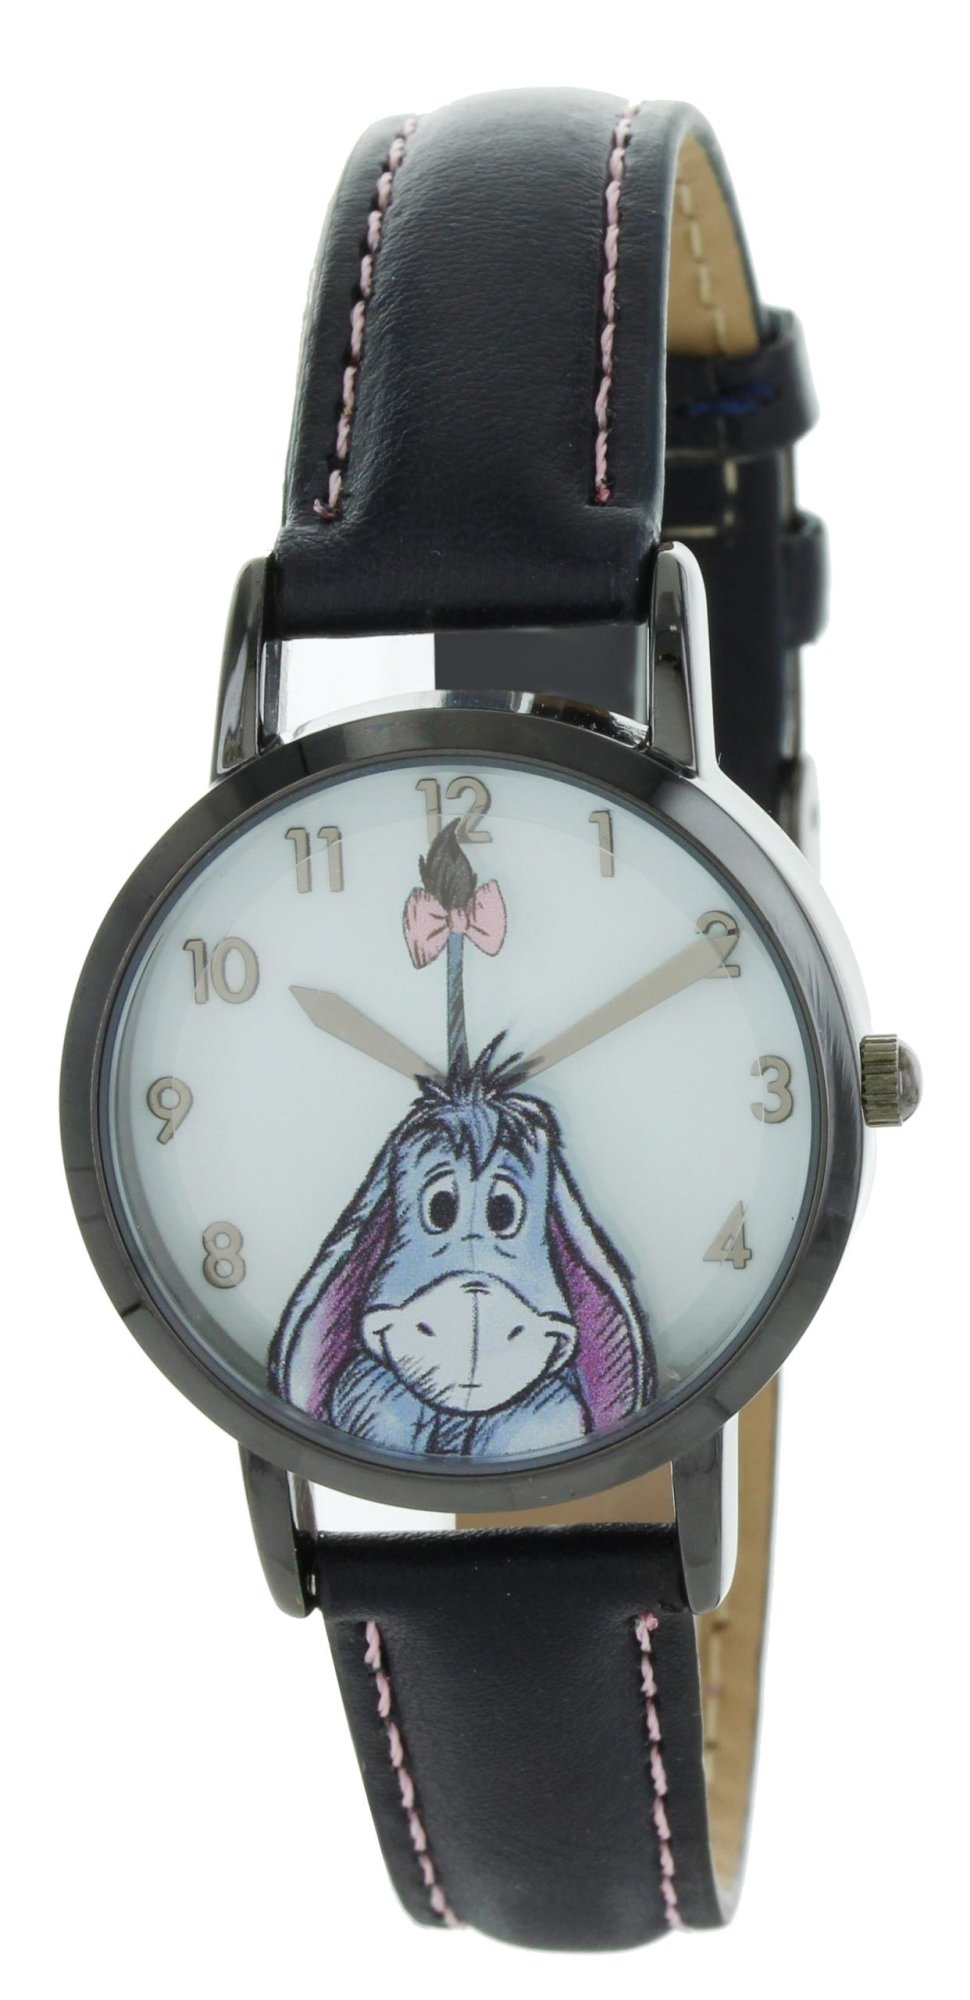 Model: Disney Vintage Style Eeyore Watch